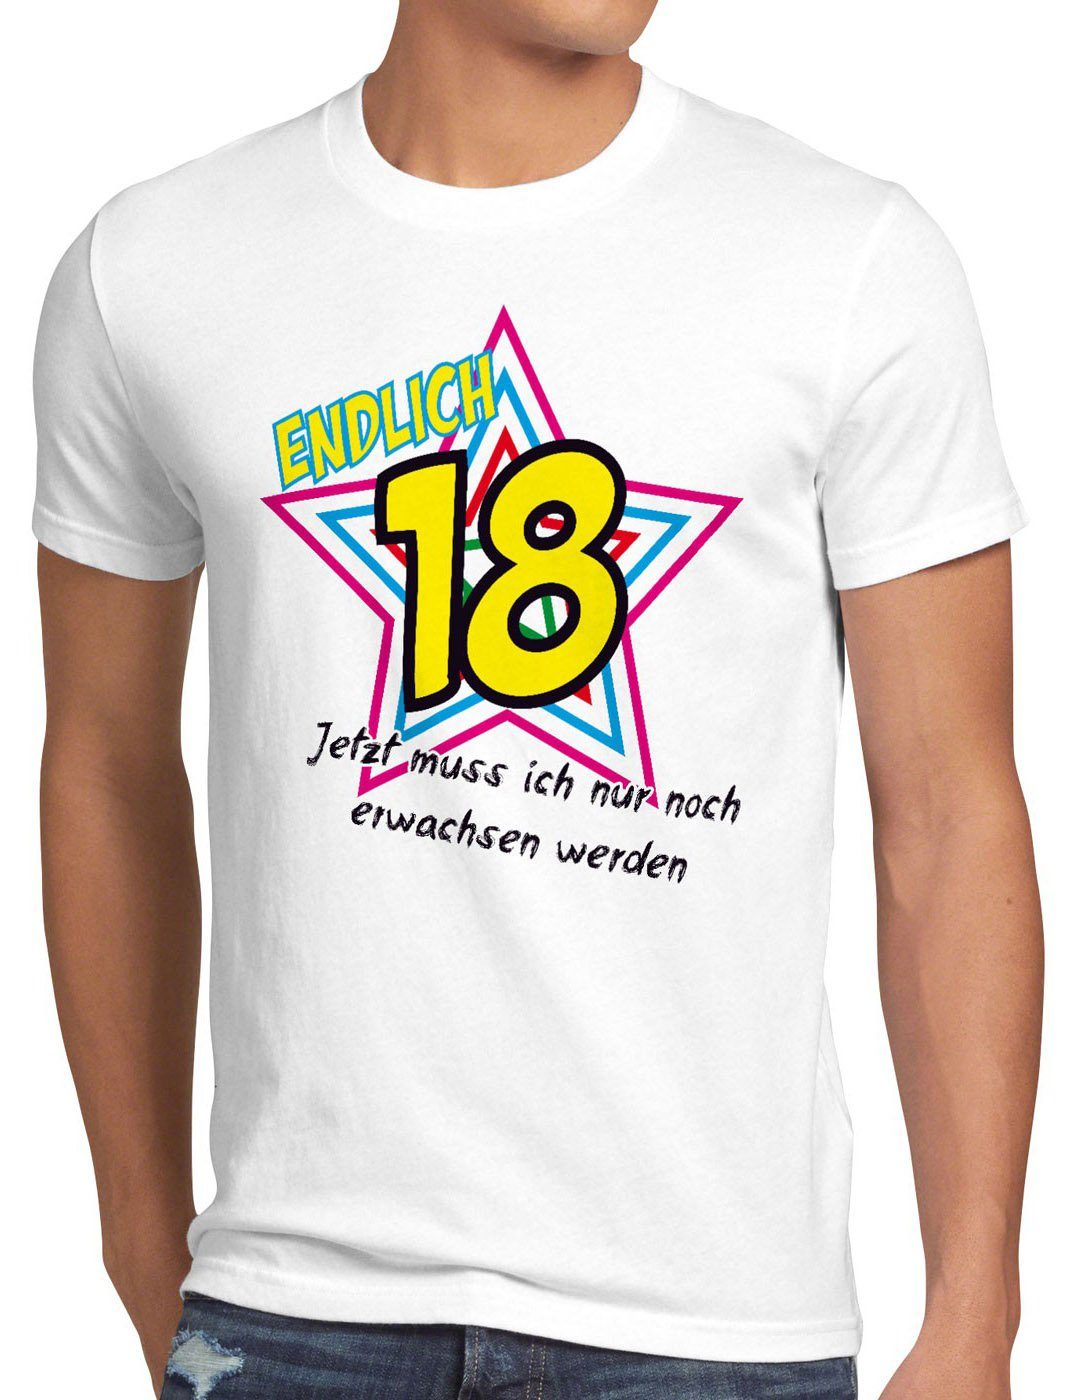 style3 Print-Shirt Herren T-Shirt Endlich 18 Jetzt noch erwachsen werden! Geburtstag Fun Funshirt weiß